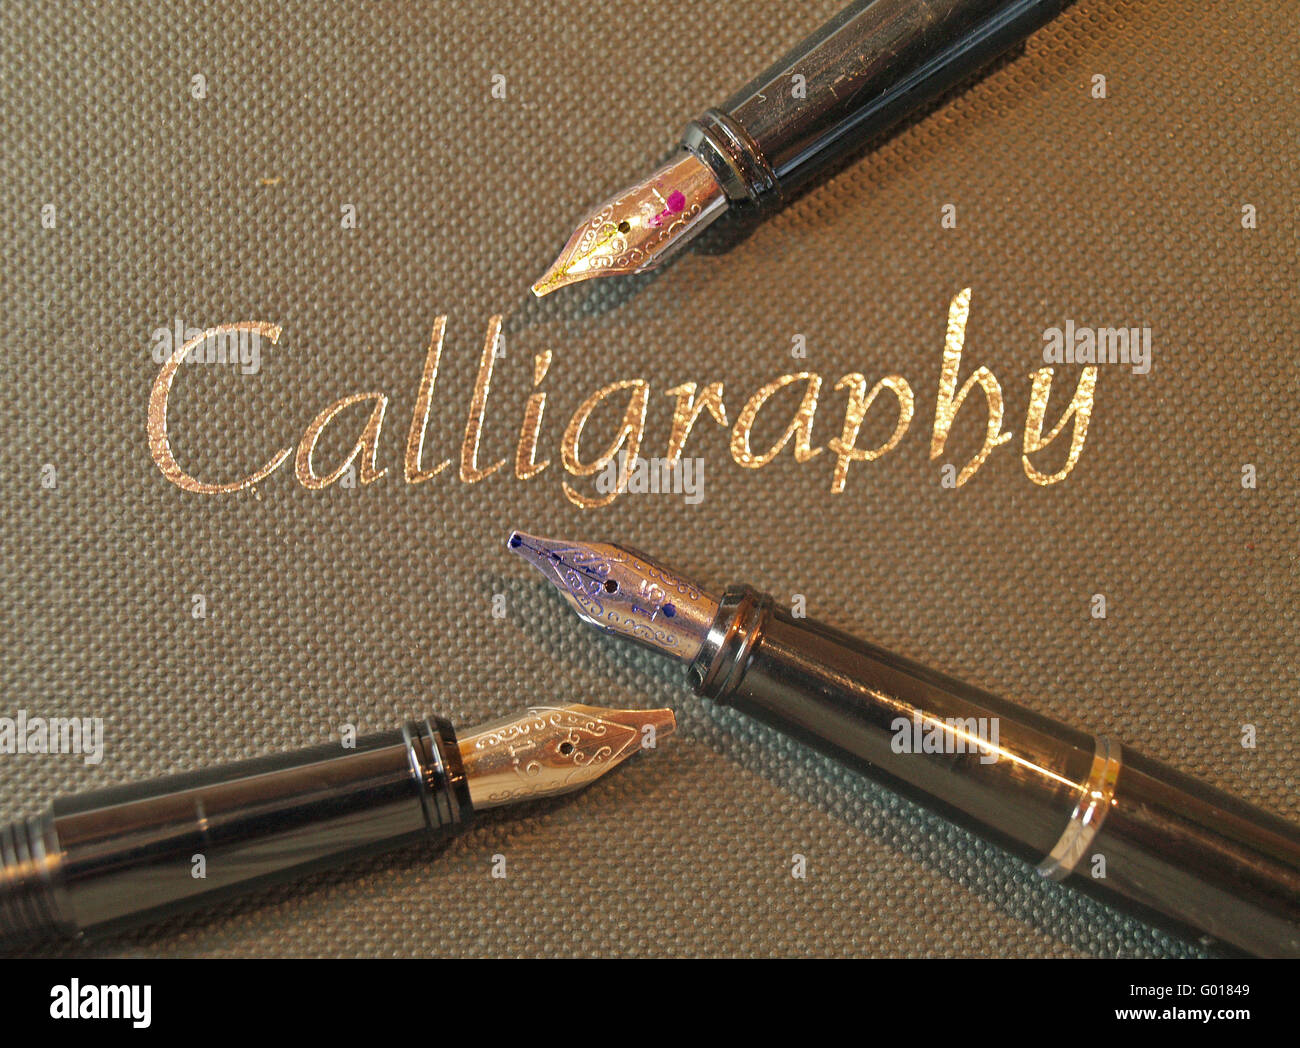 Calligraphy Stock Photo